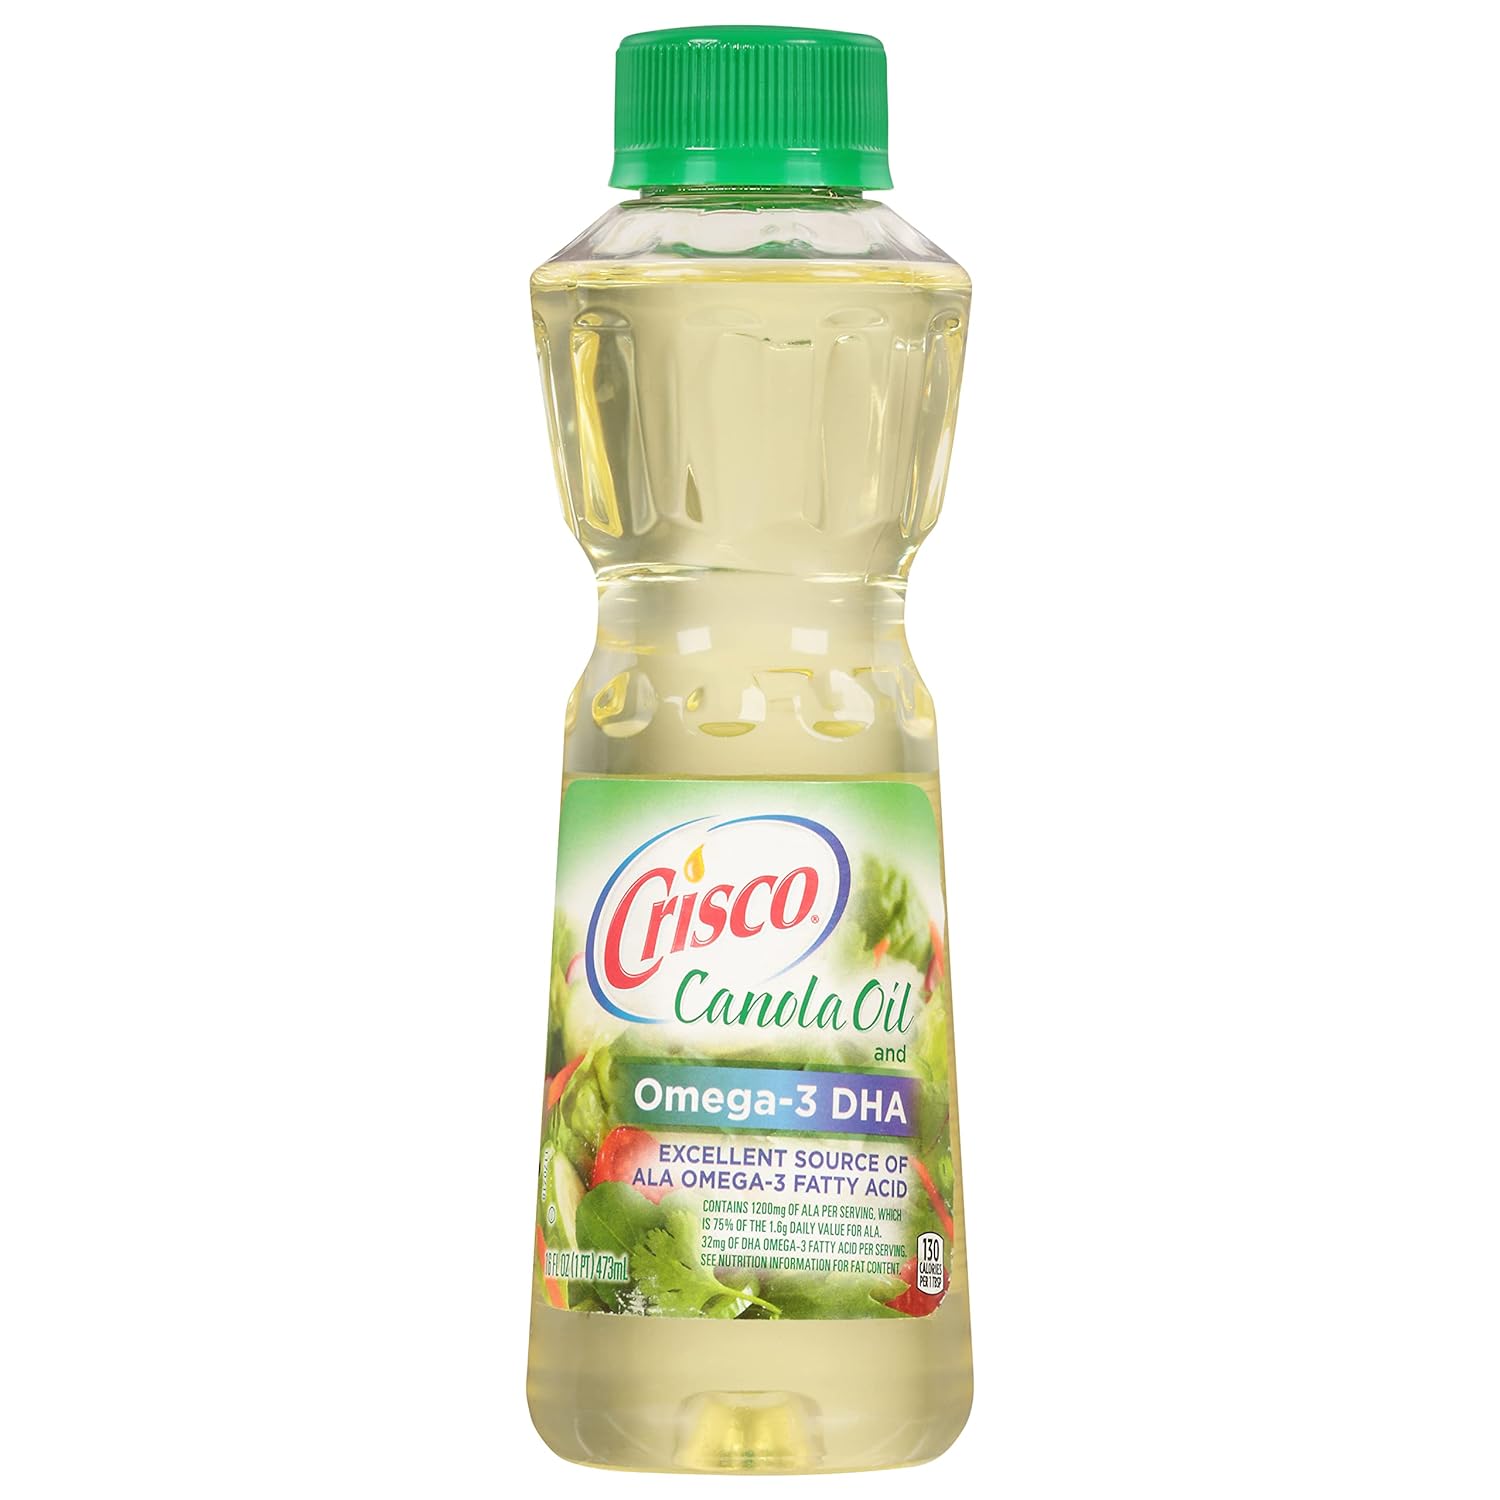 Crisco Canola Oil with Omega-3 DHA, 16 Fluid Ounce